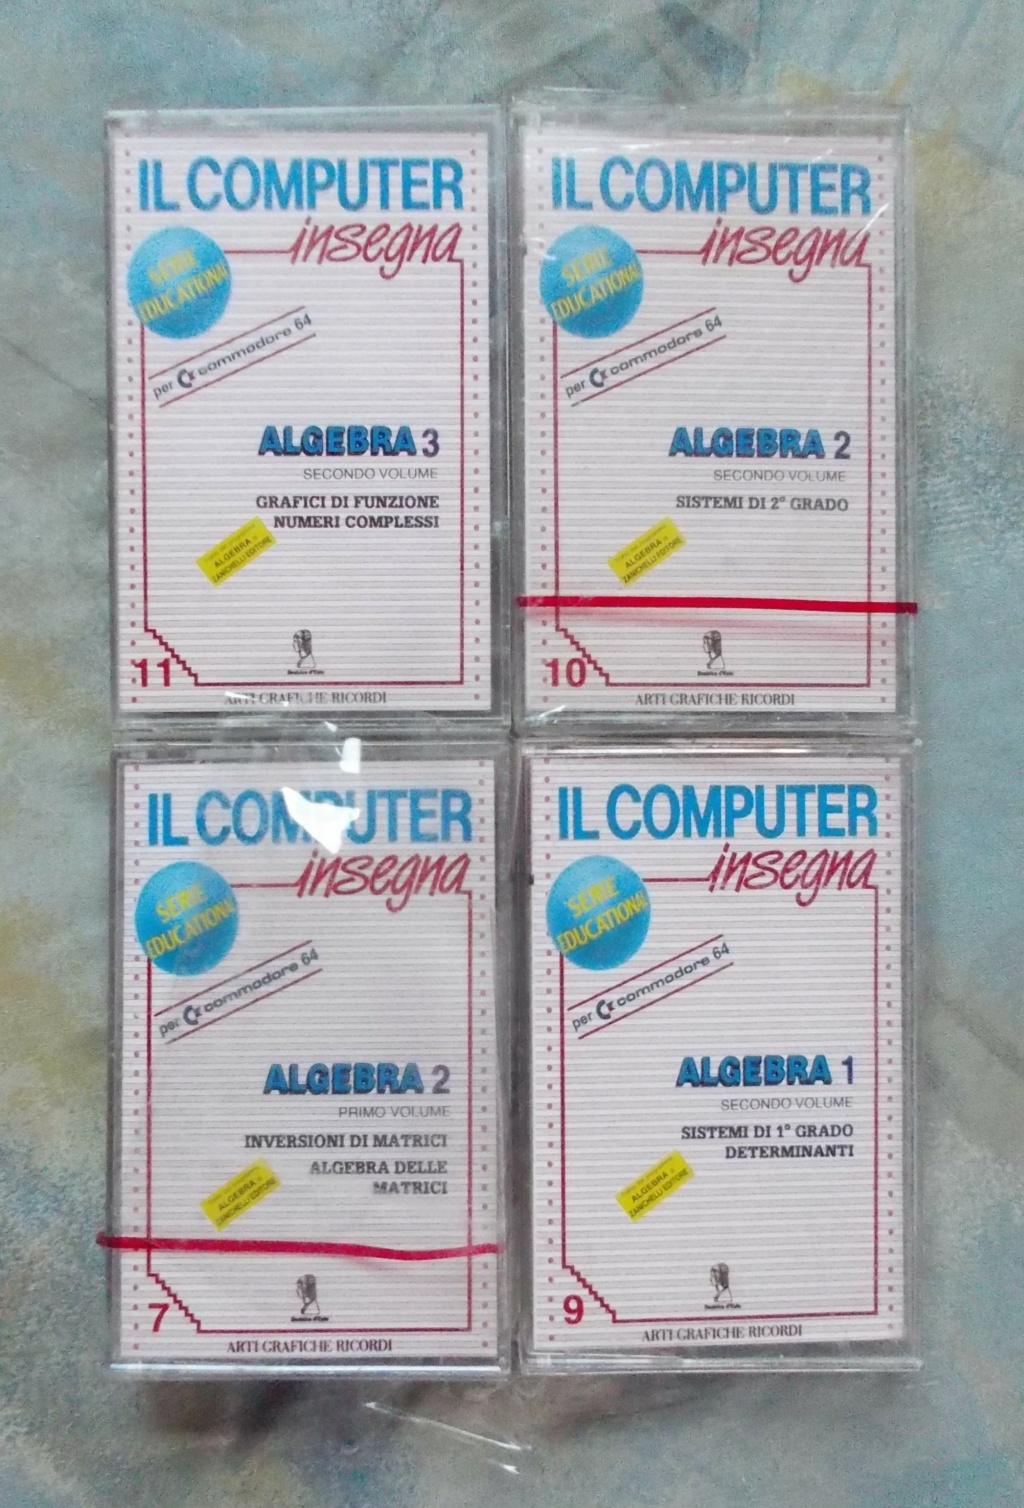 [Vds] Lot de quelques cassettes pour Commodore 64 C64_310